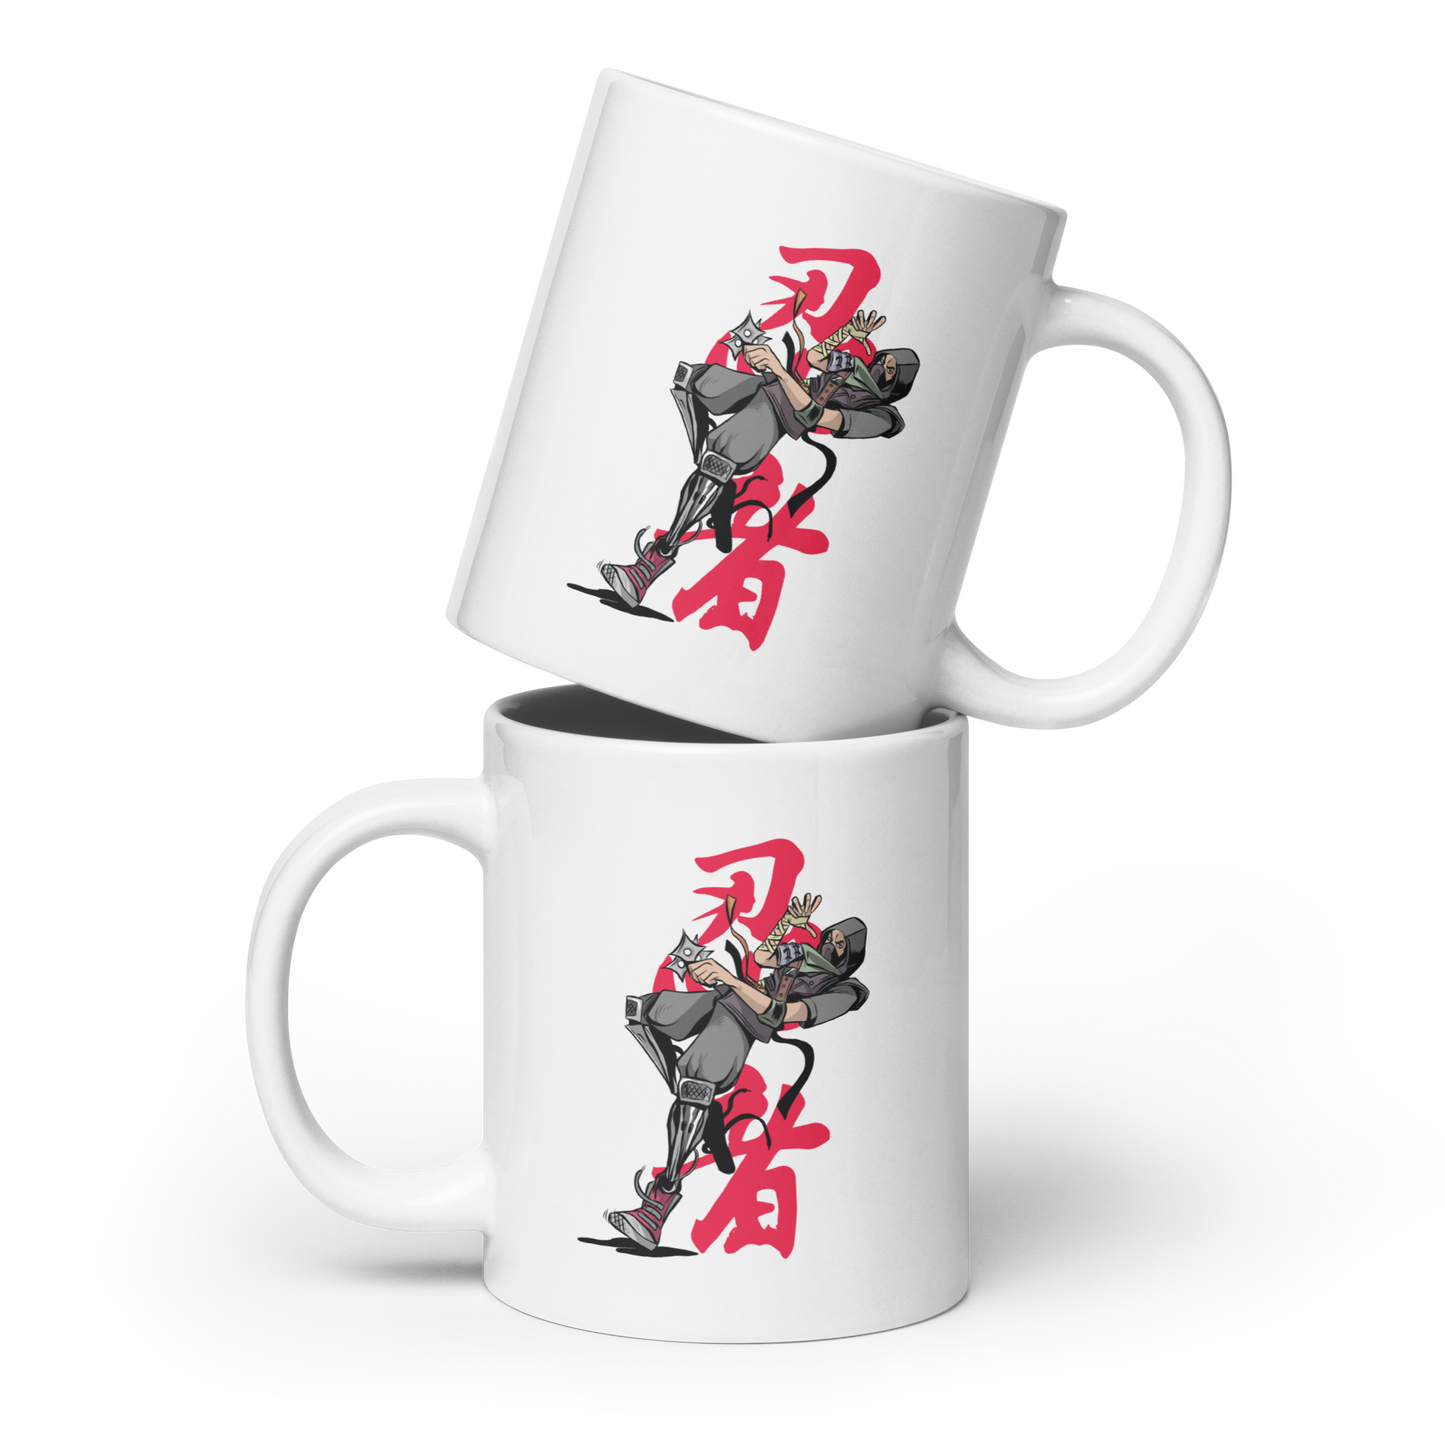 Ninja | White glossy mug